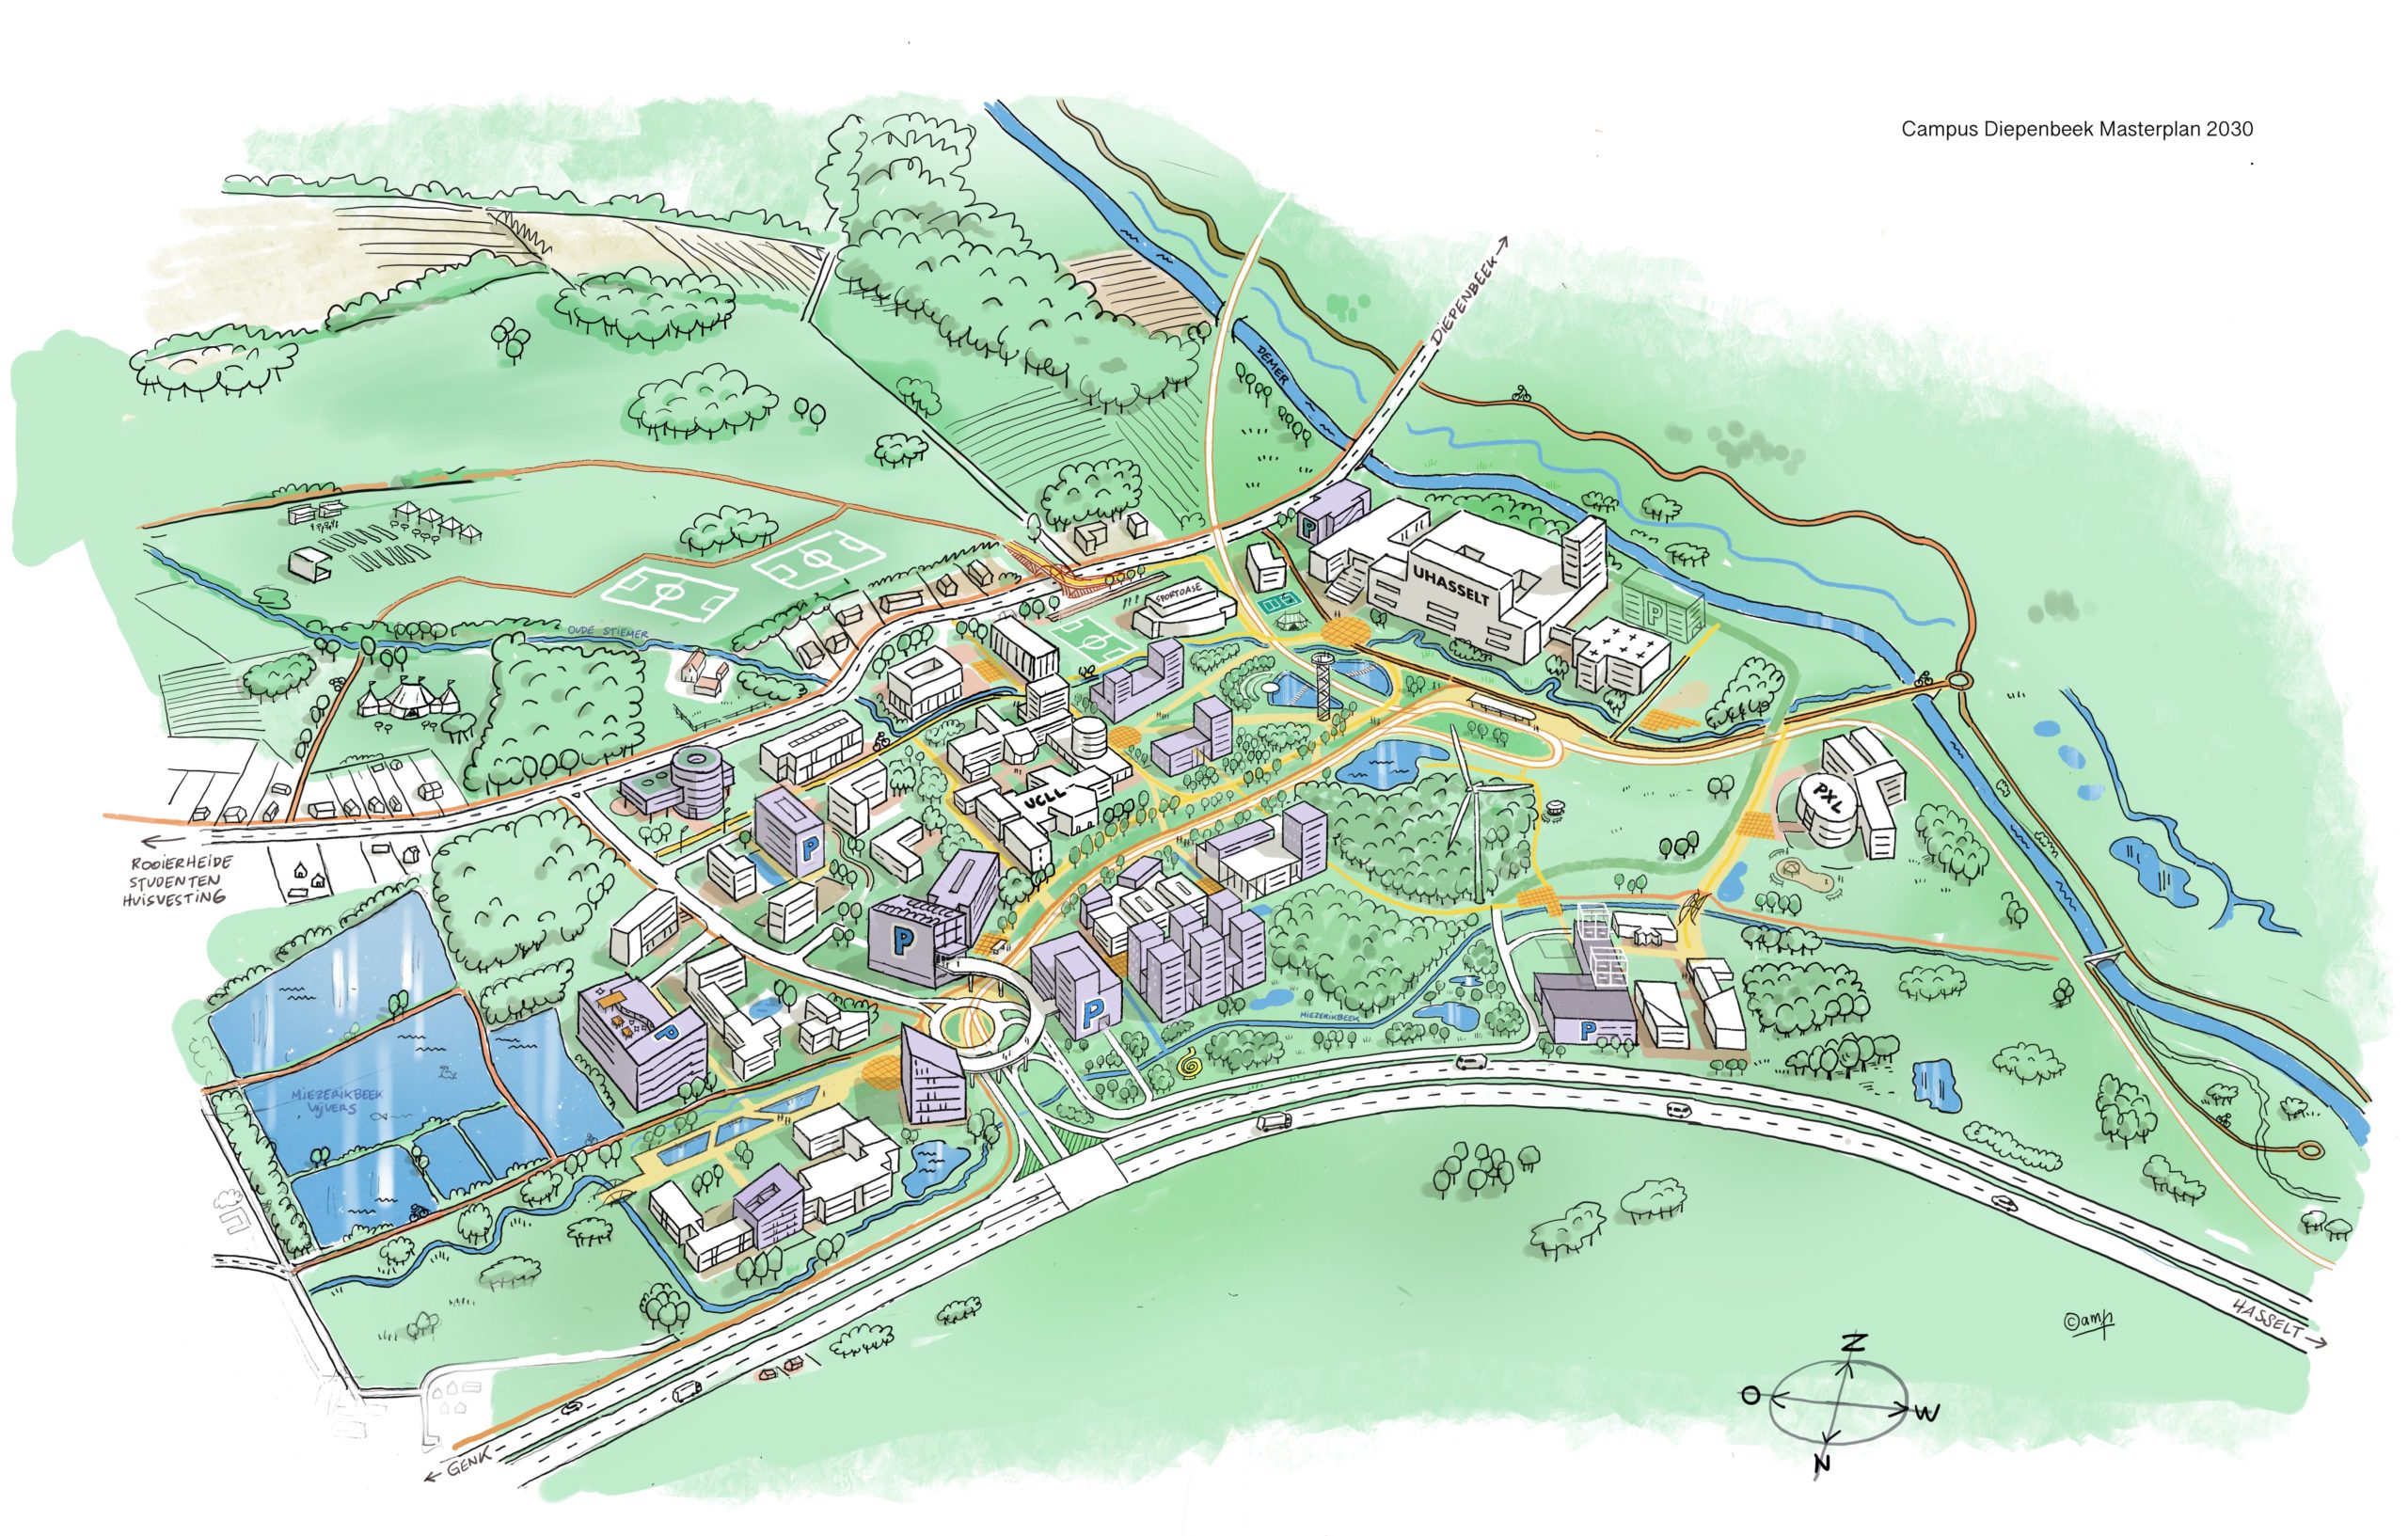 Overzichtsplan van Campus Diepenbeek in 2030